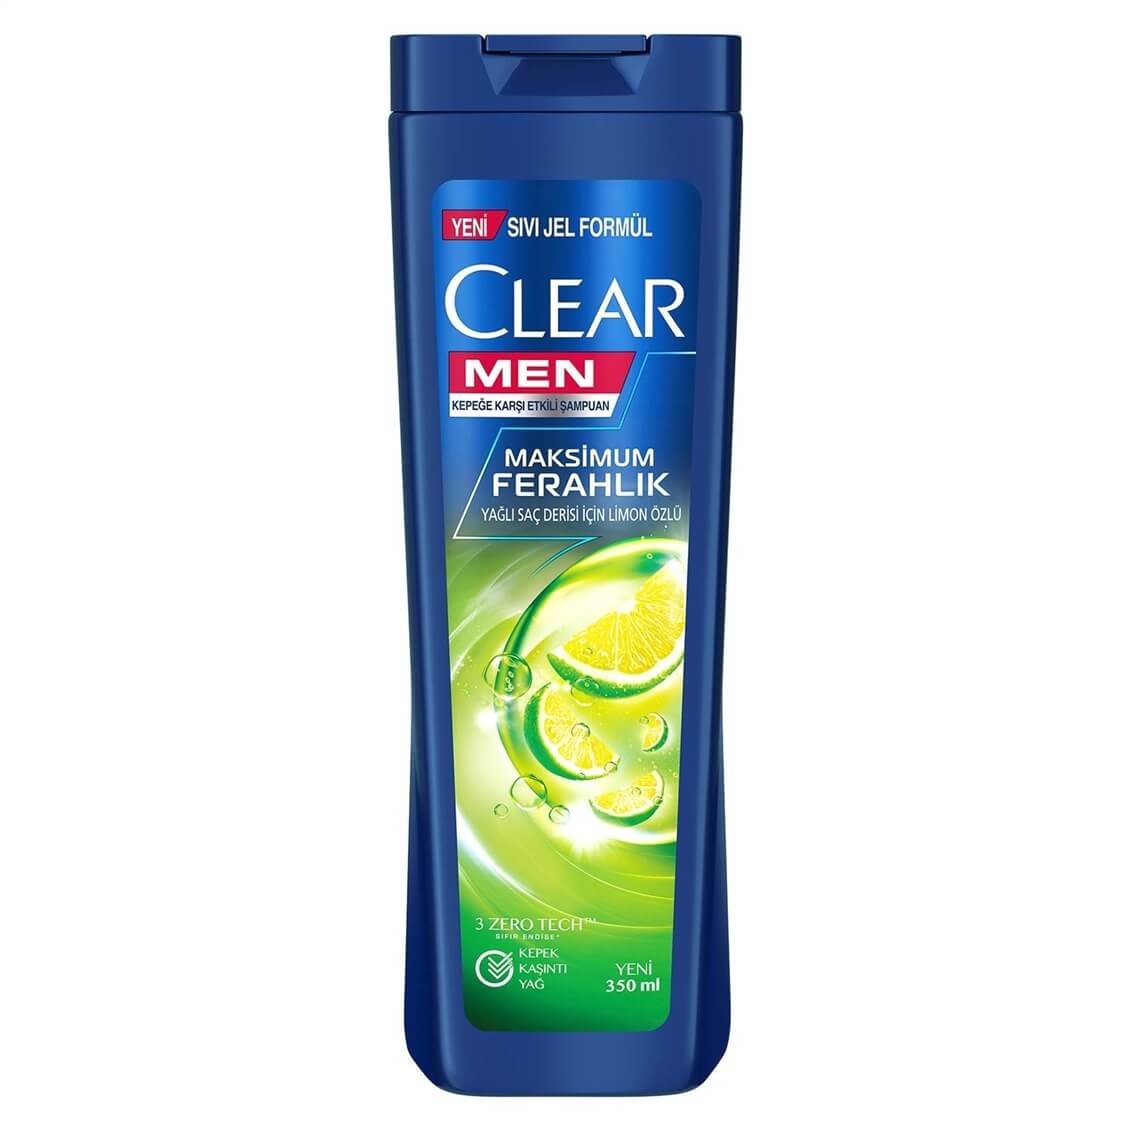 Clear Men Kepeğe Karşı Etkili Şampuan Maksimum Ferahlık Yağlı Saç Derisi  İçin Limon Özlü 350 ml - Onur Market